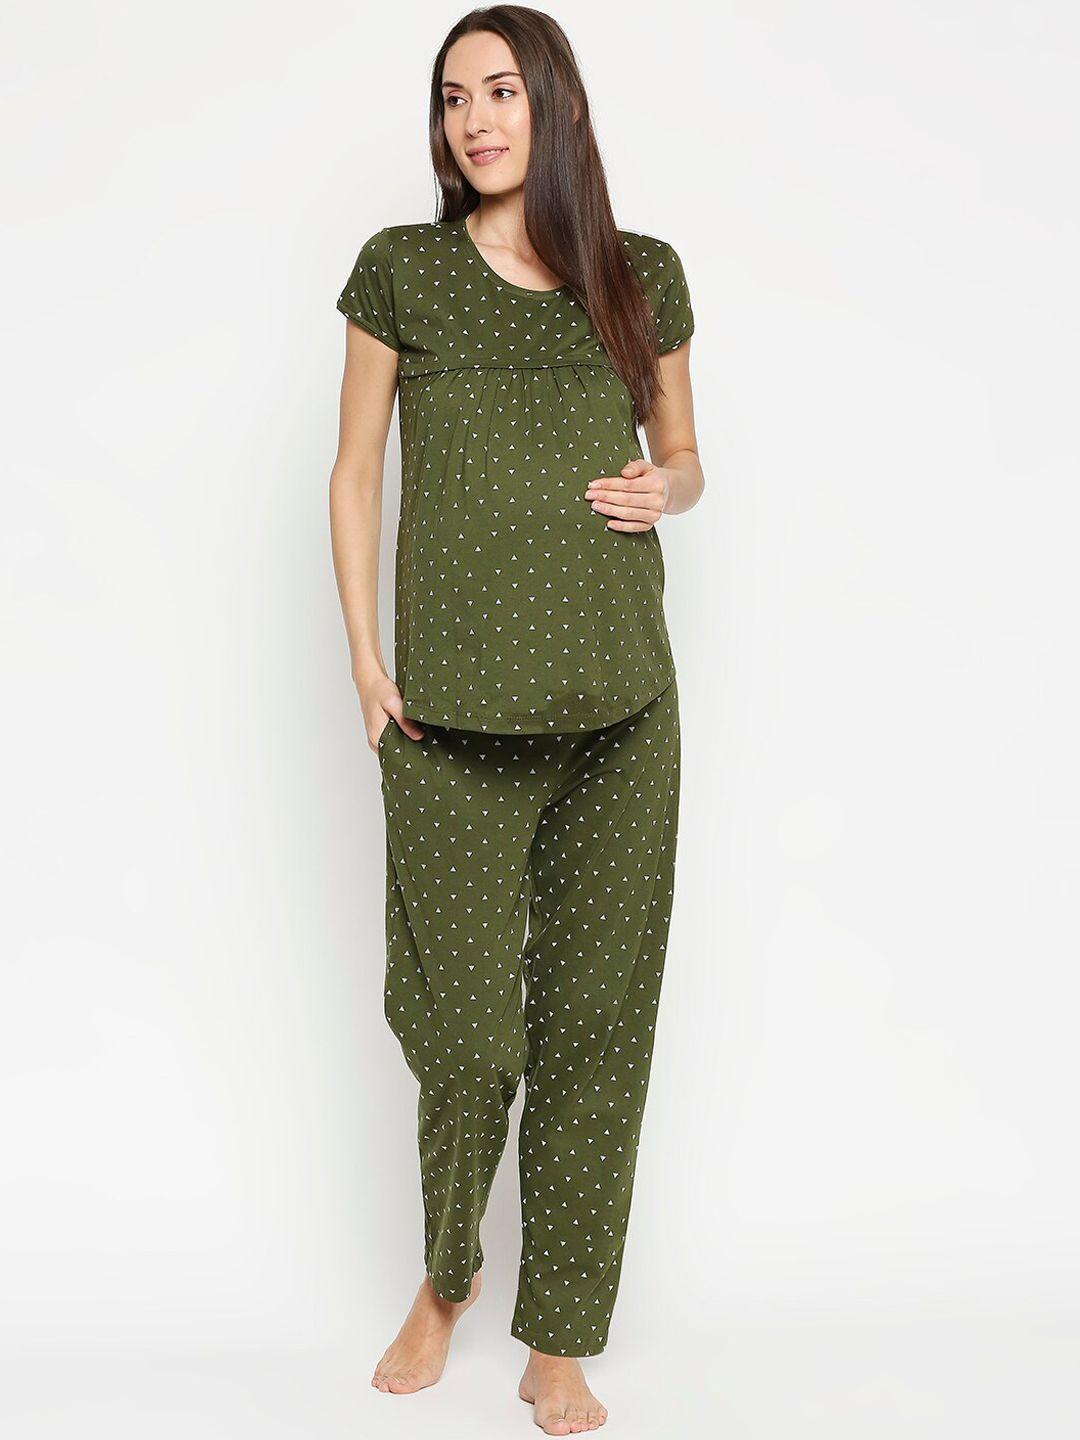 av2 women olive green & white printed maternity cotton night suit